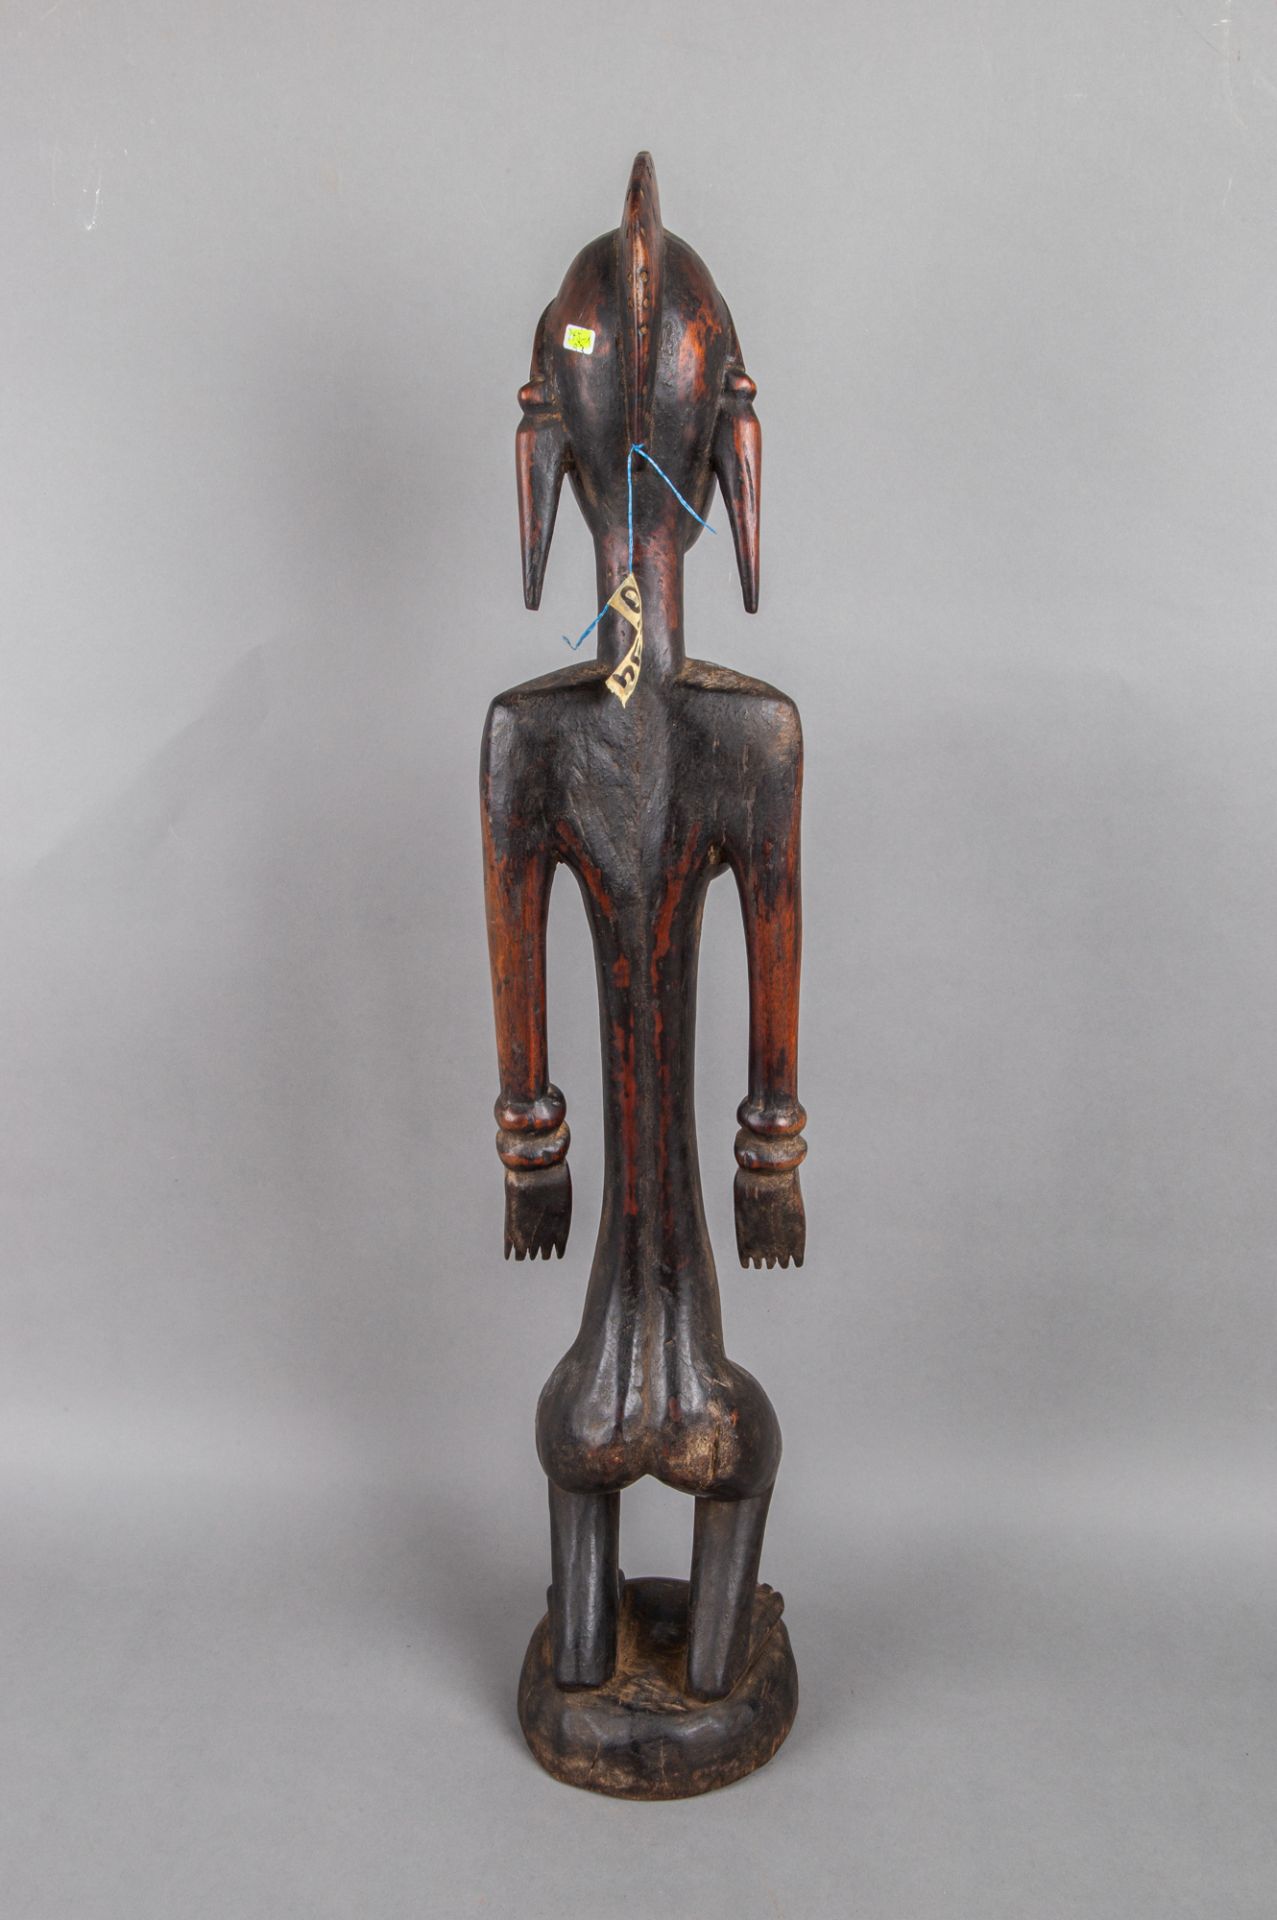 Stehende weibliche Figur 'jo nyeleni', Holz, Bamana, Mali - Image 4 of 4